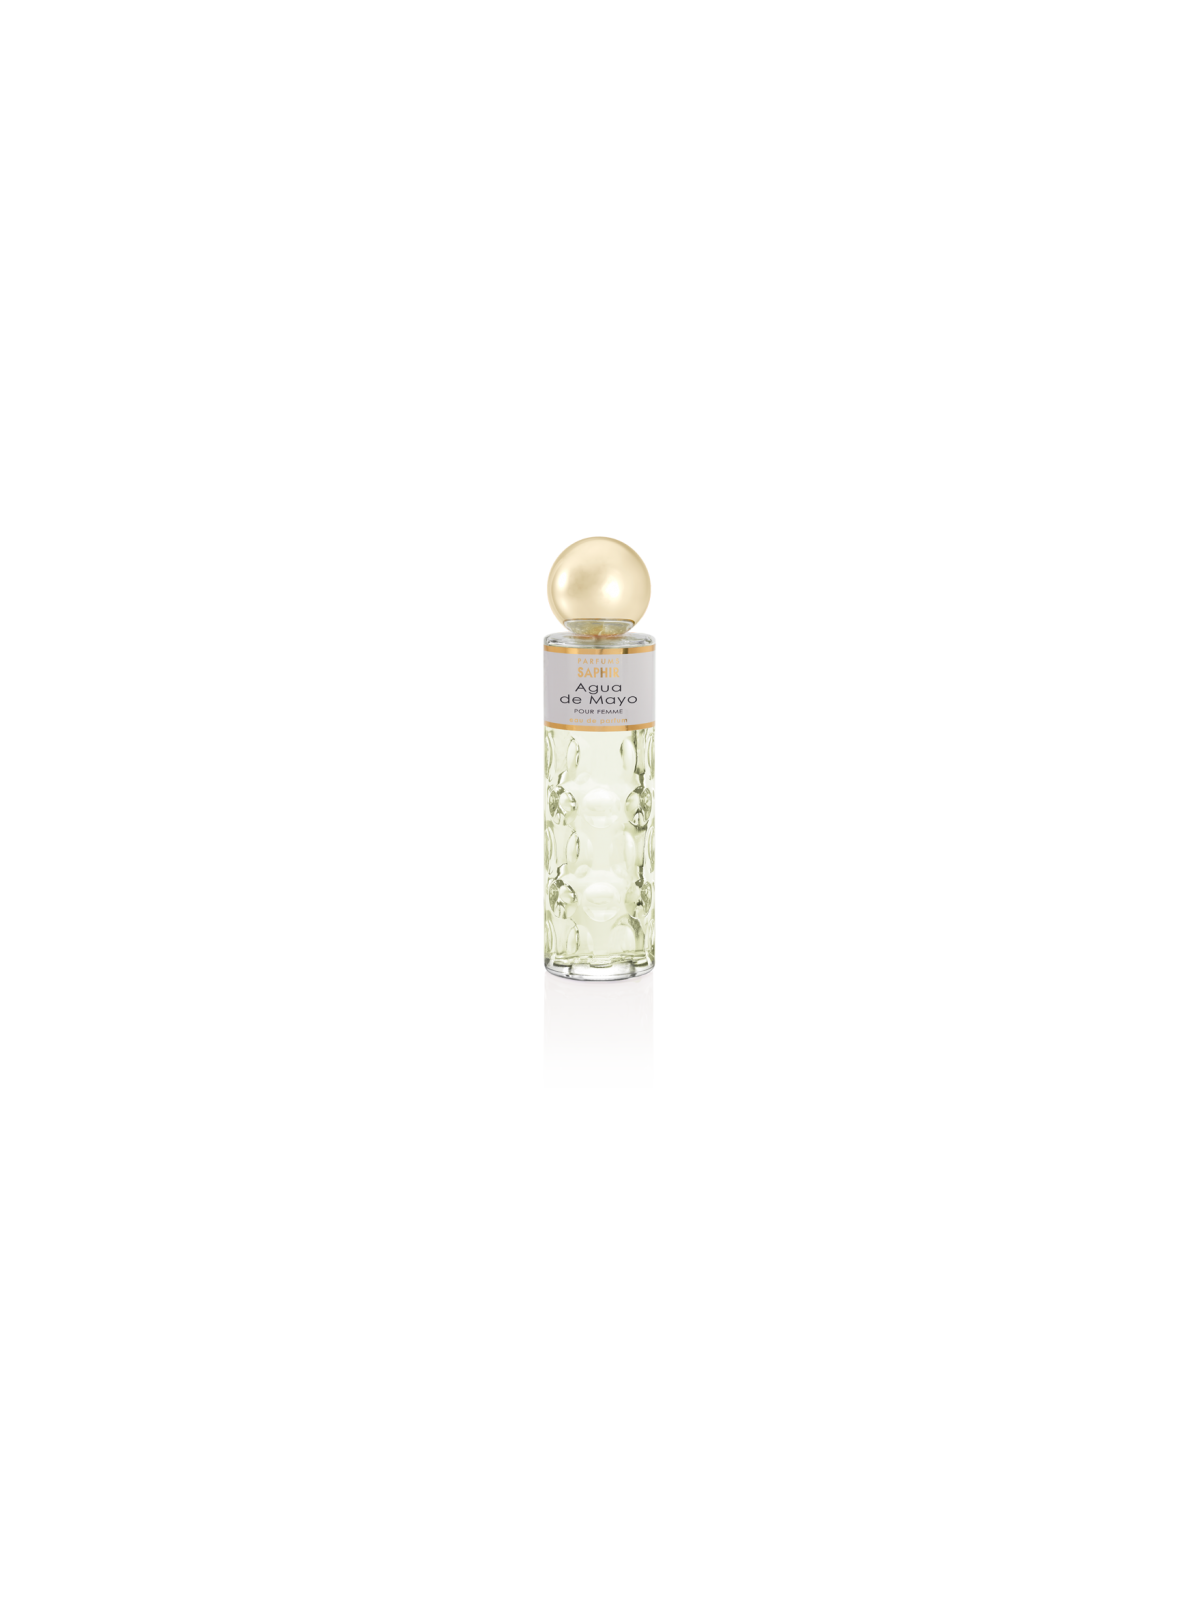 Comprar Perfume SAPHIR Agua de Mayo 200ml. en Perfumes para mujer por sólo 12,90 € o un precio específico de 12,90 € en Thalie Care